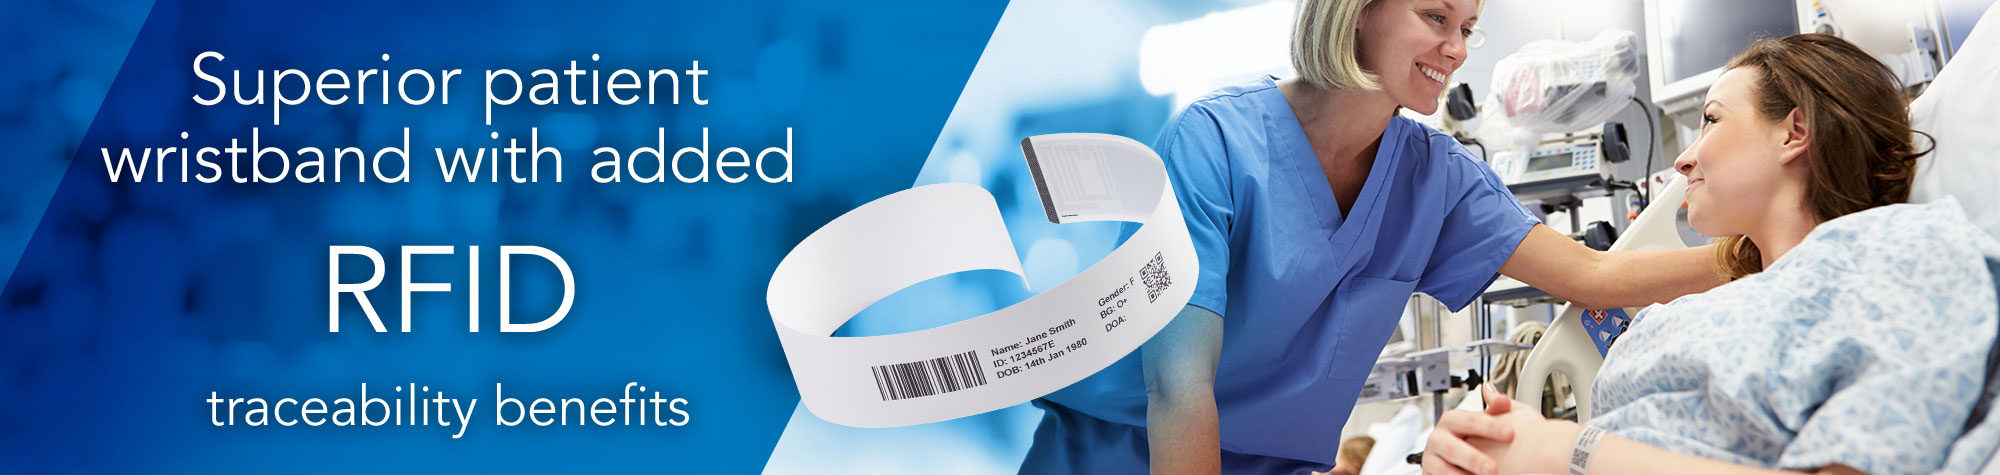 Высококачественный идентификационный браслет для пациентов с дополнительными преимуществами RFID прослеживаемости